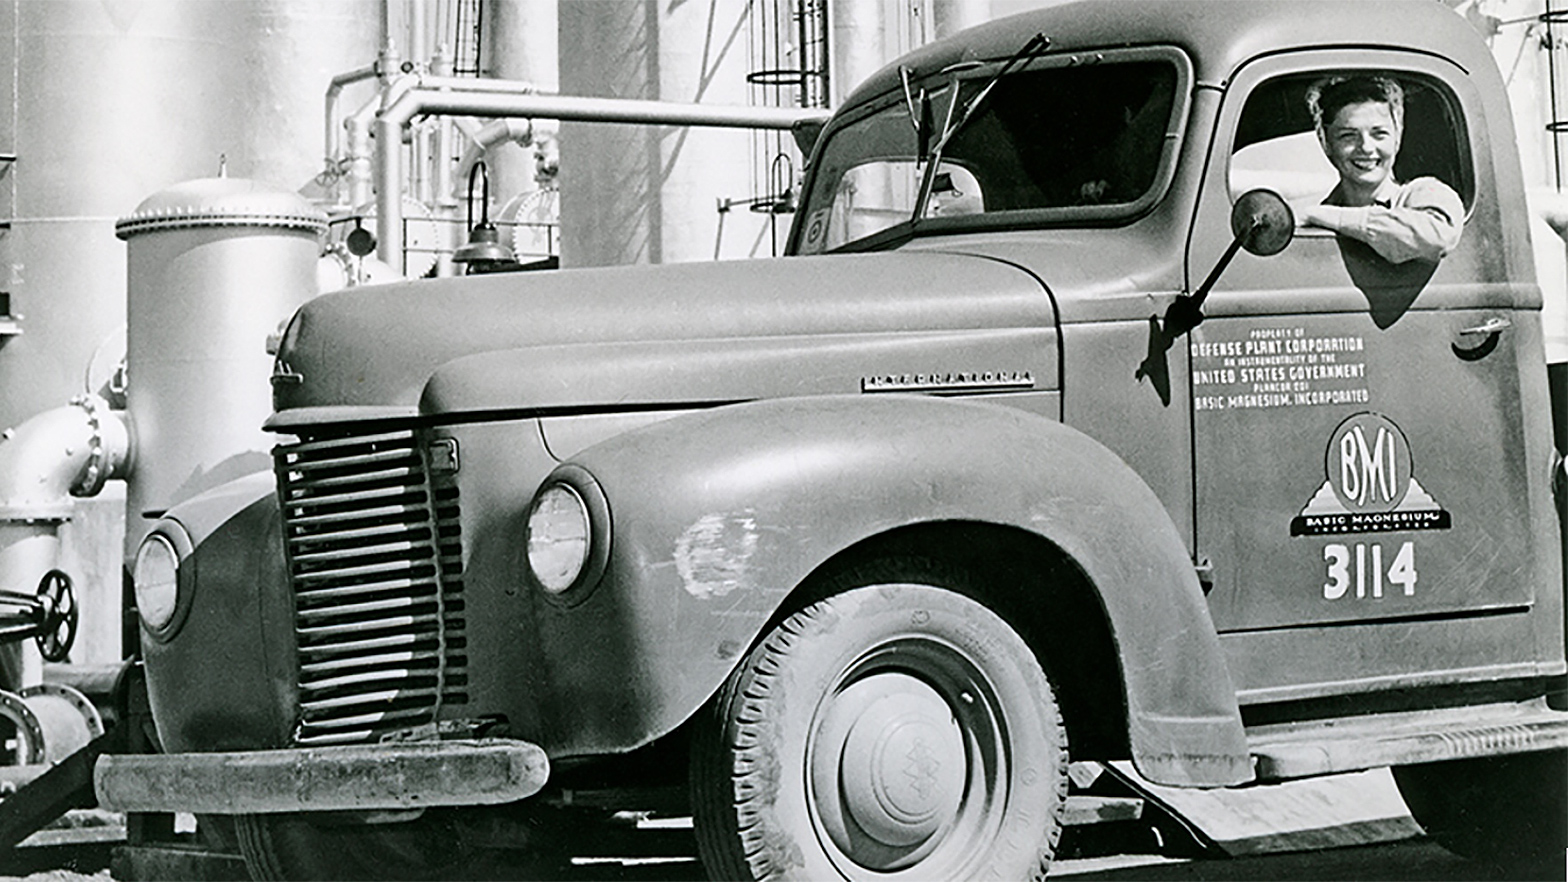 Chevron Richmond refinery worker Eleanor Barker in a truck in 1943.